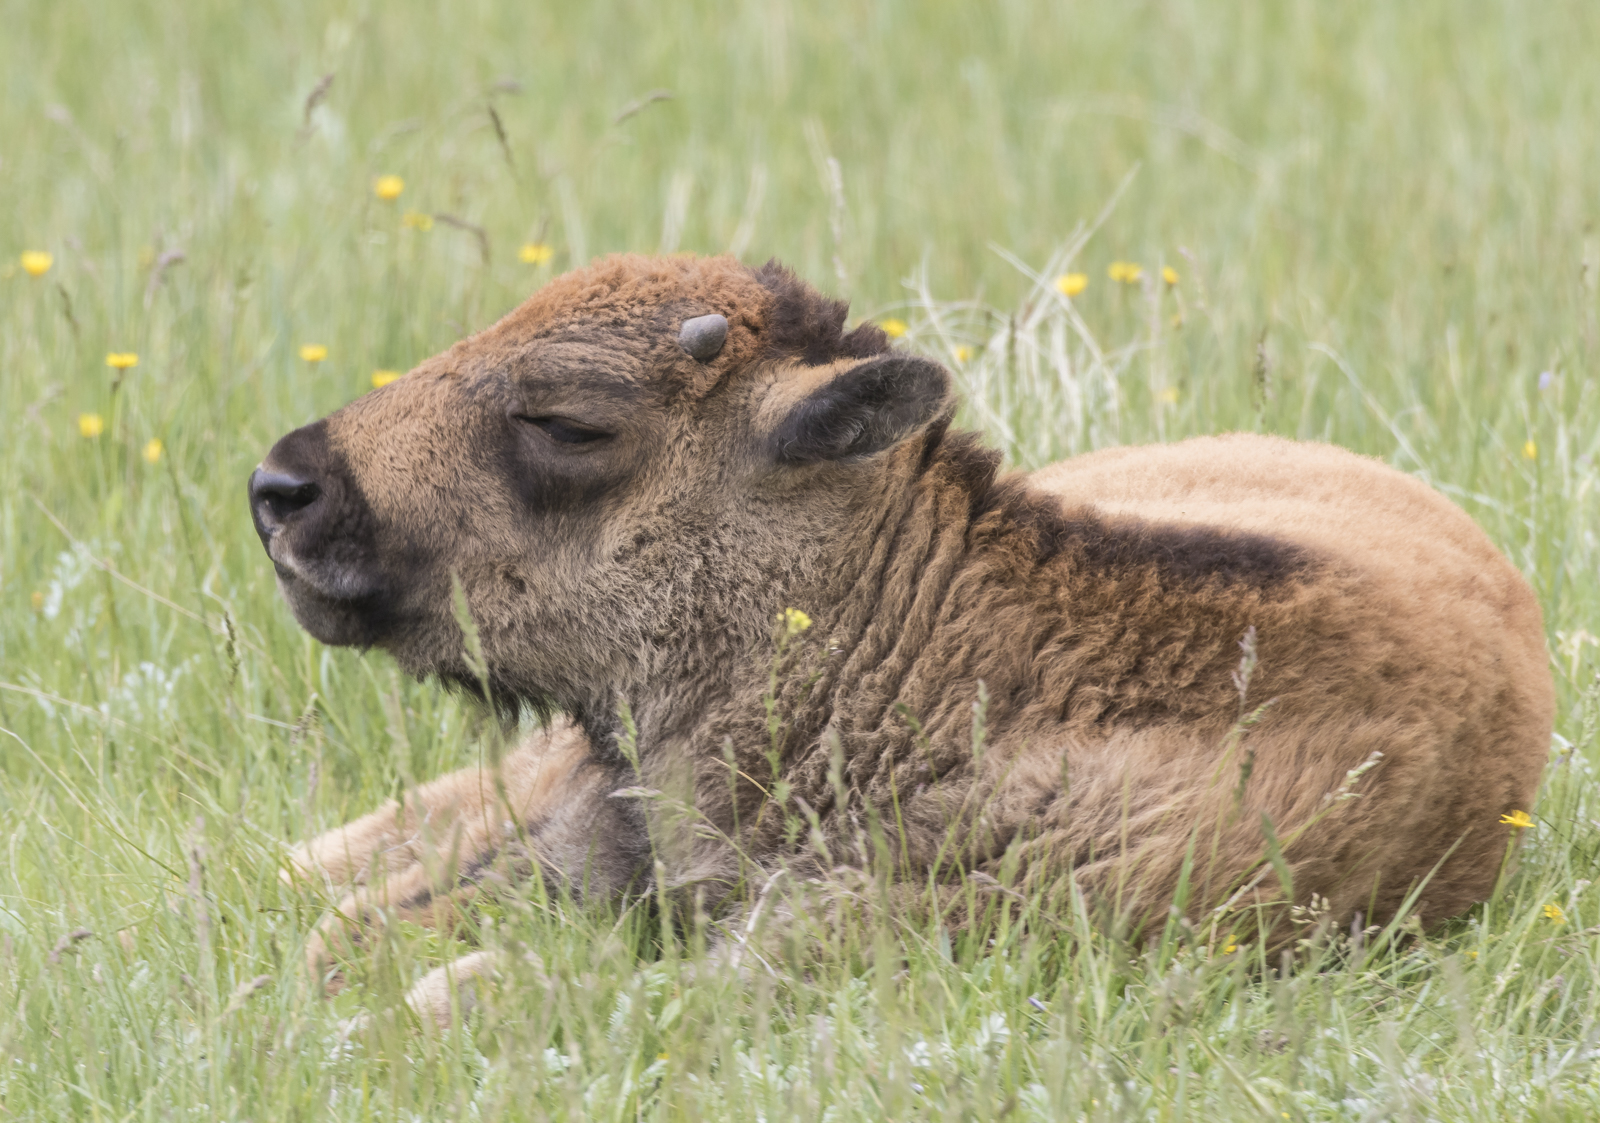 Baby bison darker color